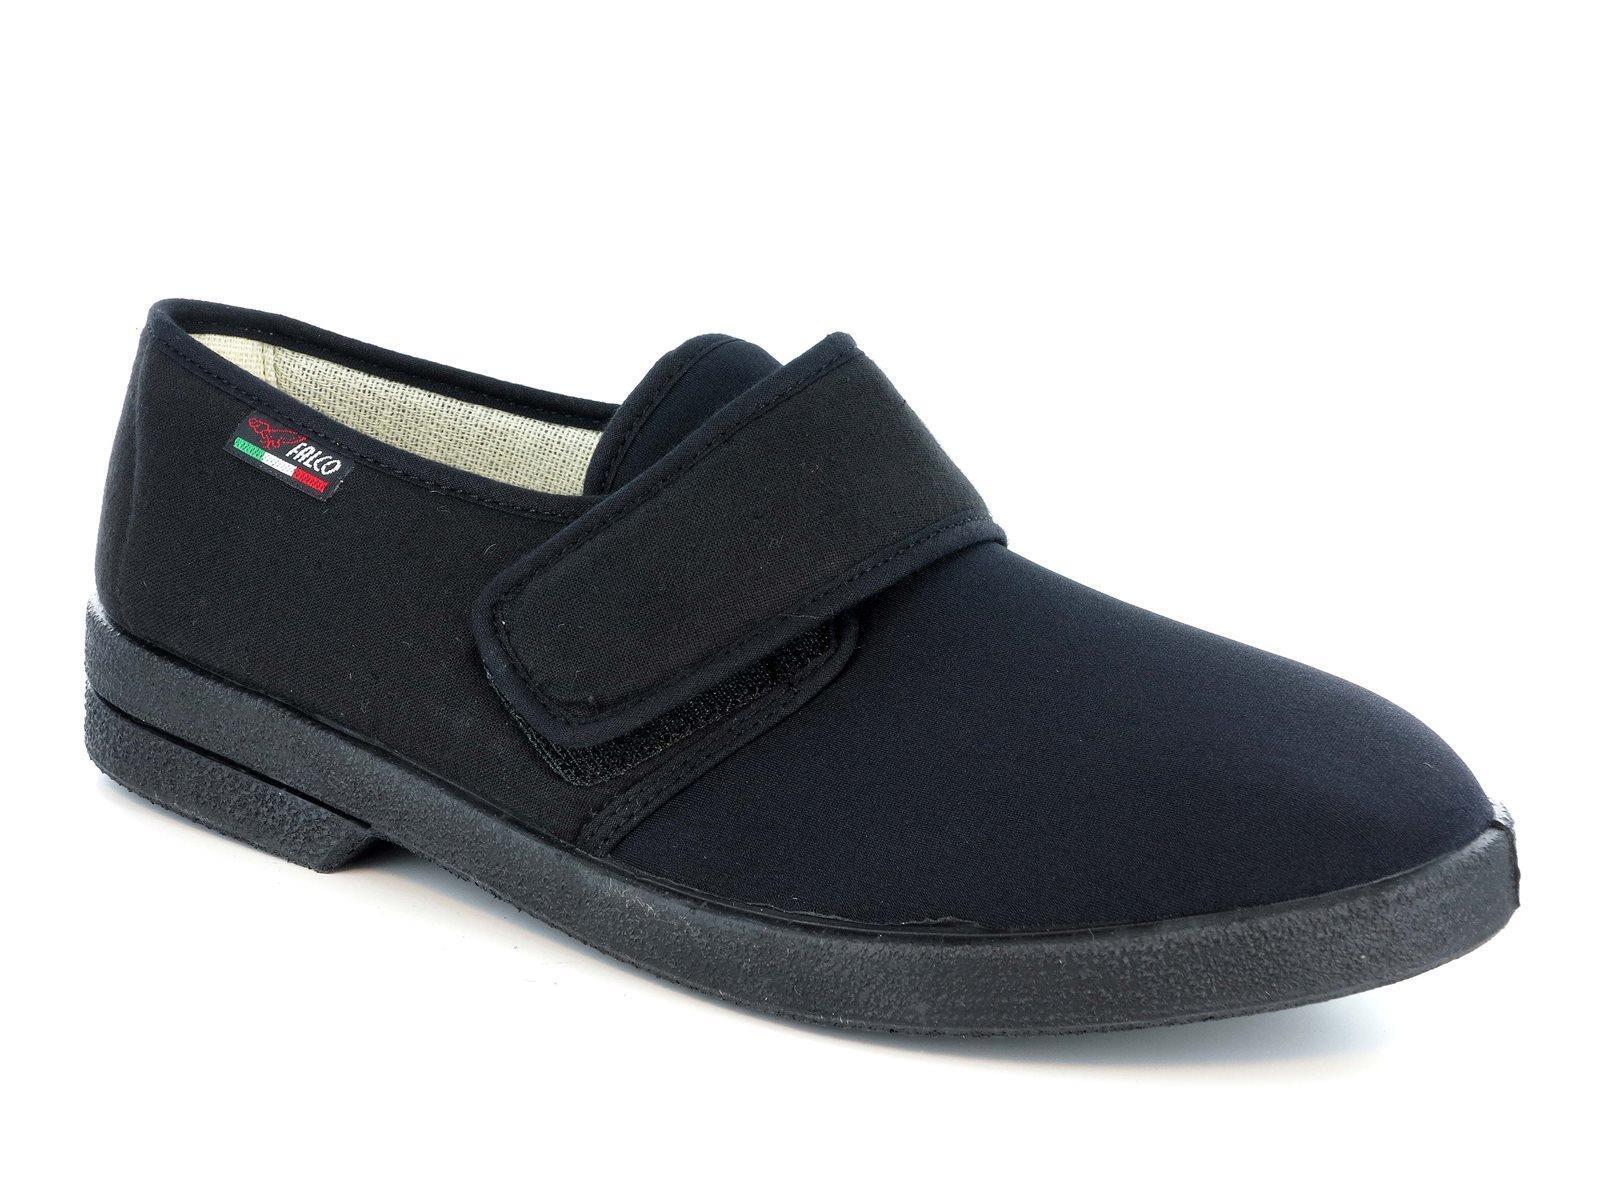 GAVIGA 340 Scarpe pantofole primaverili comfort da uomo in tessuto con strappo nel colore nero e blu